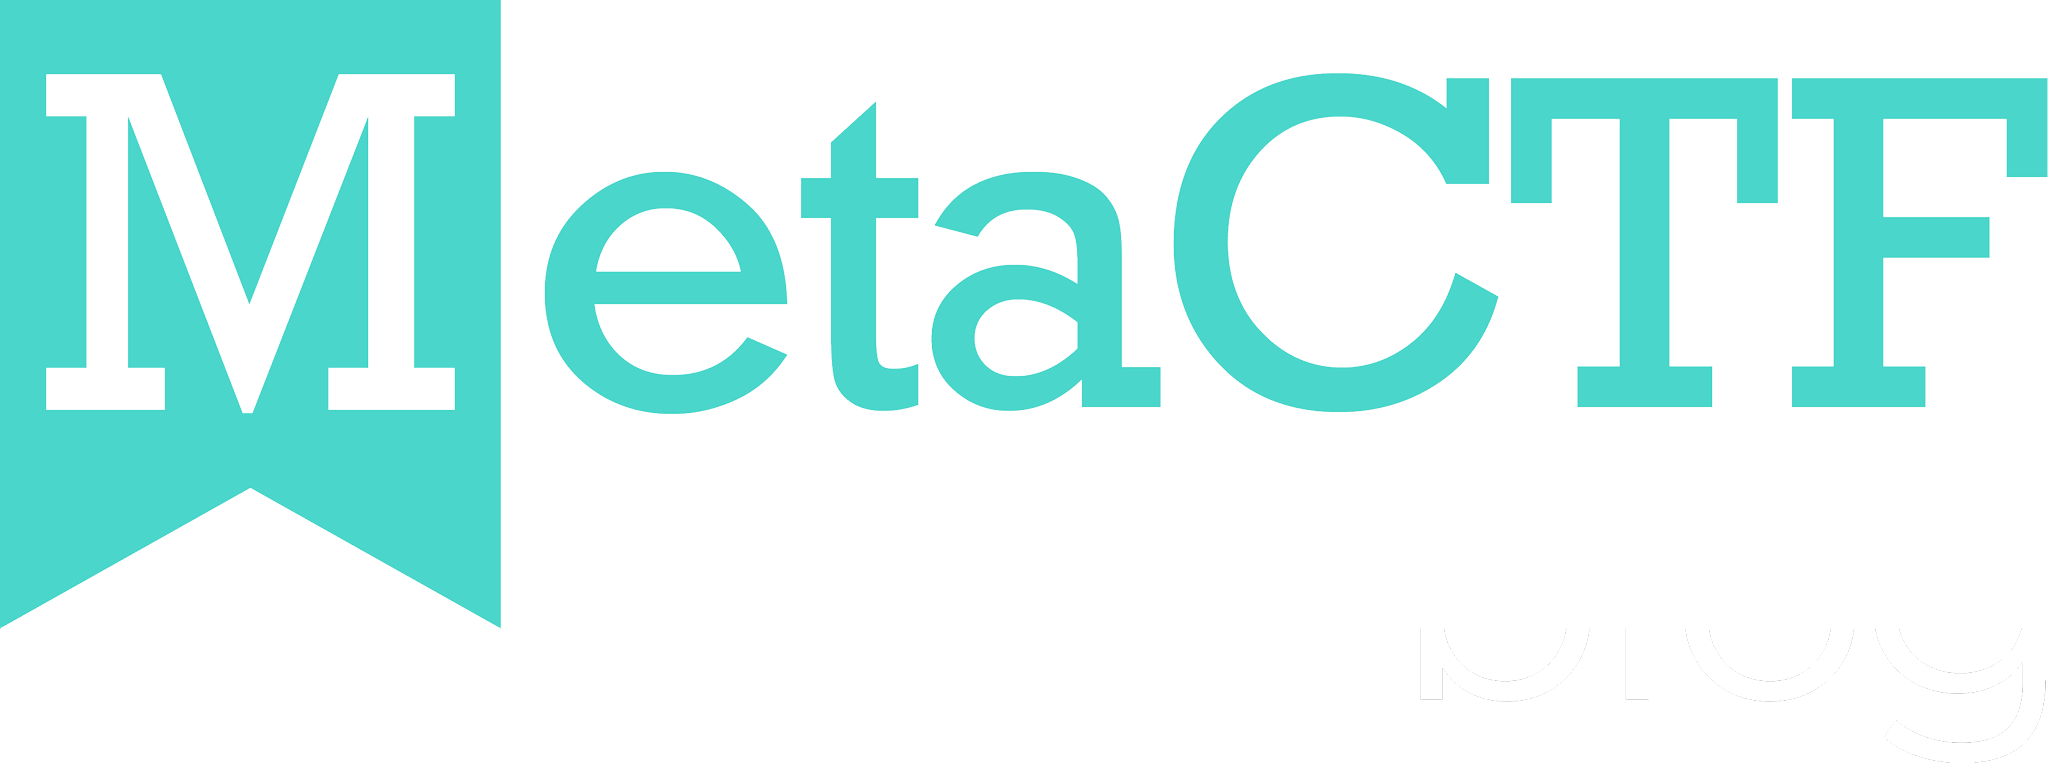 MetaCTF Blog